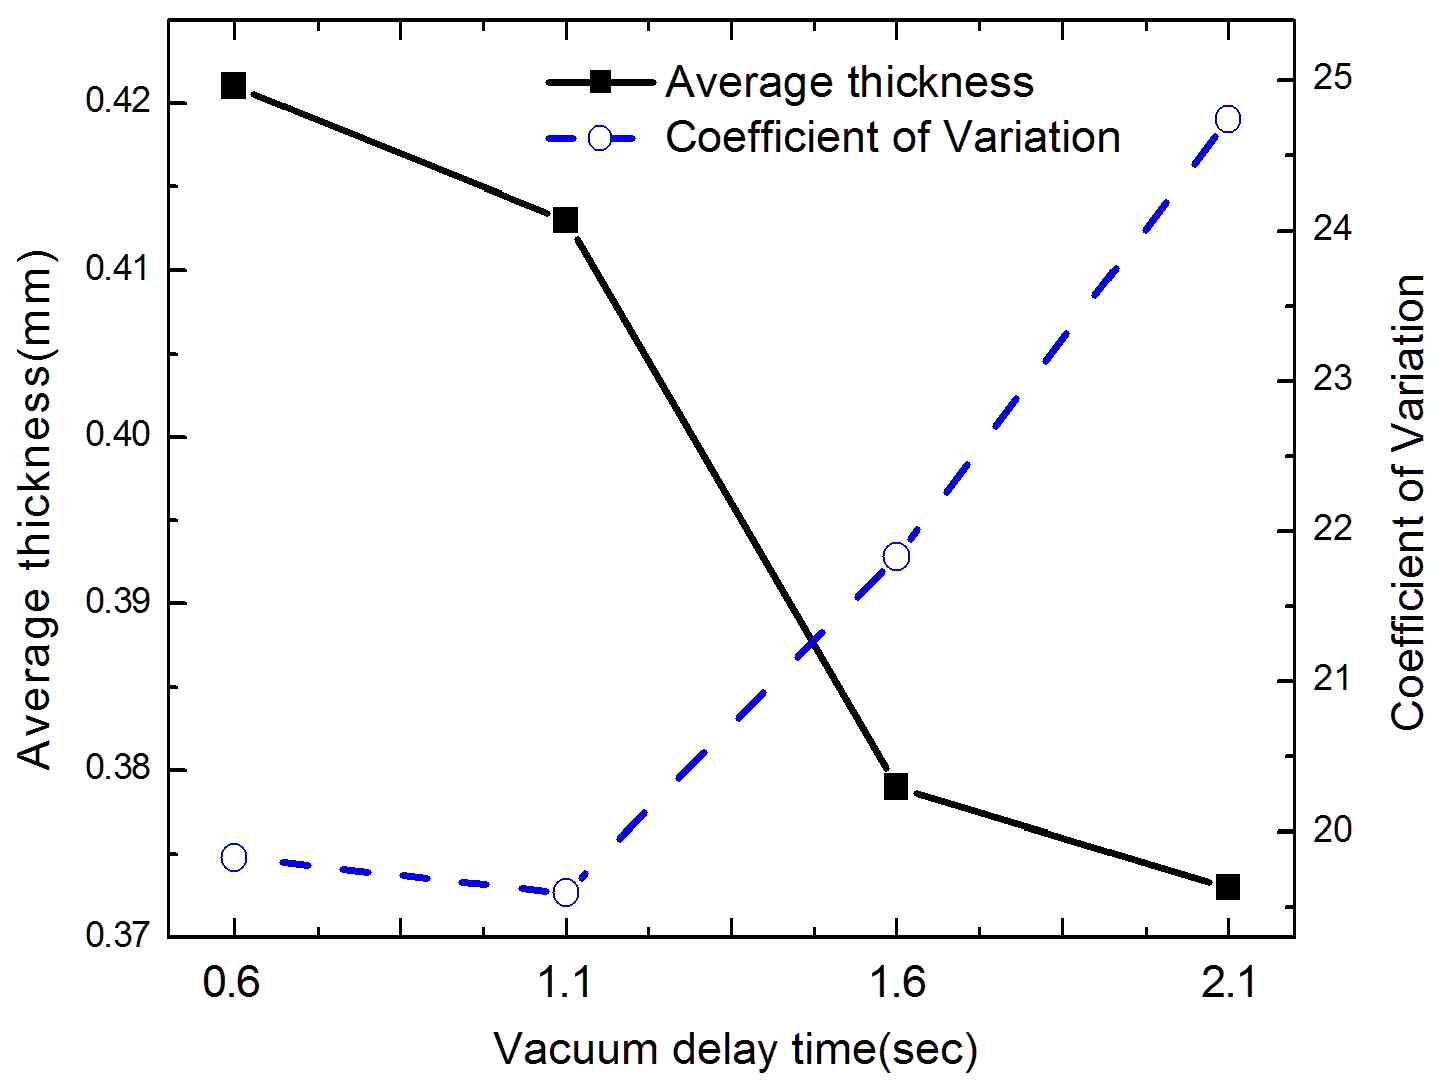 진공지연시간에 따른 필름 평균두께와 두께변동계수(COV)